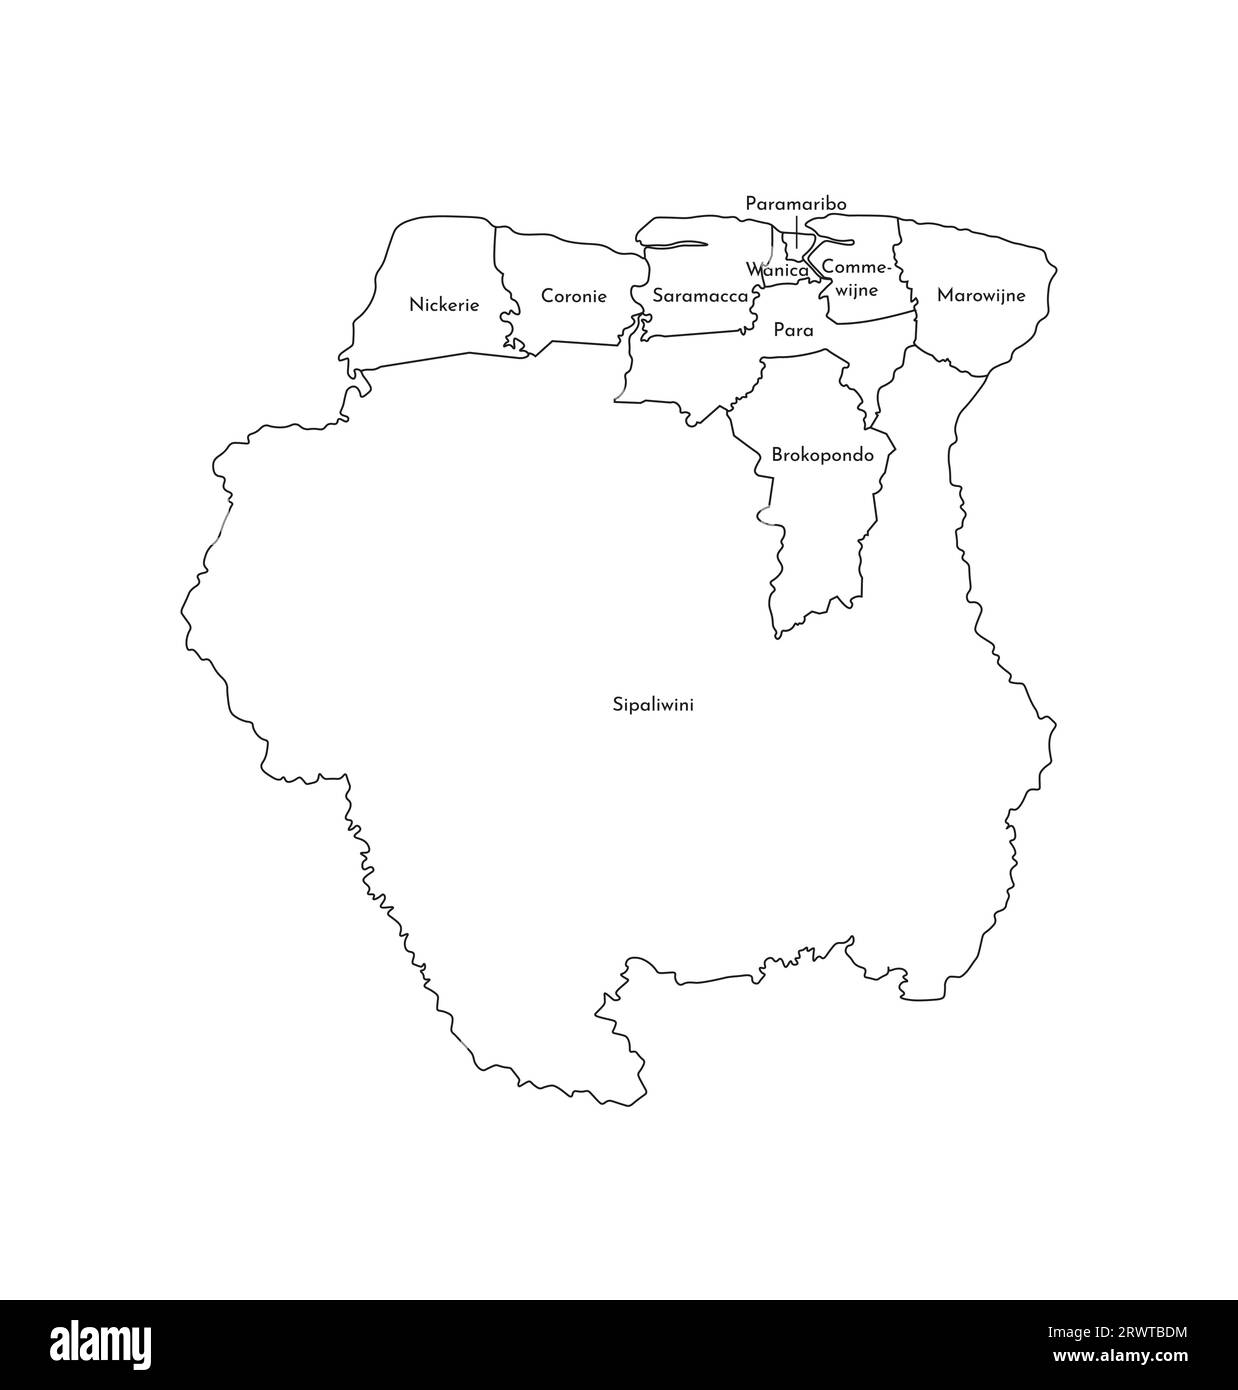 Vektorisolierte Darstellung einer vereinfachten Verwaltungskarte von Suriname. Grenzen und Namen der Bezirke (Regionen). Silhouetten mit schwarzen Linien. Stock Vektor